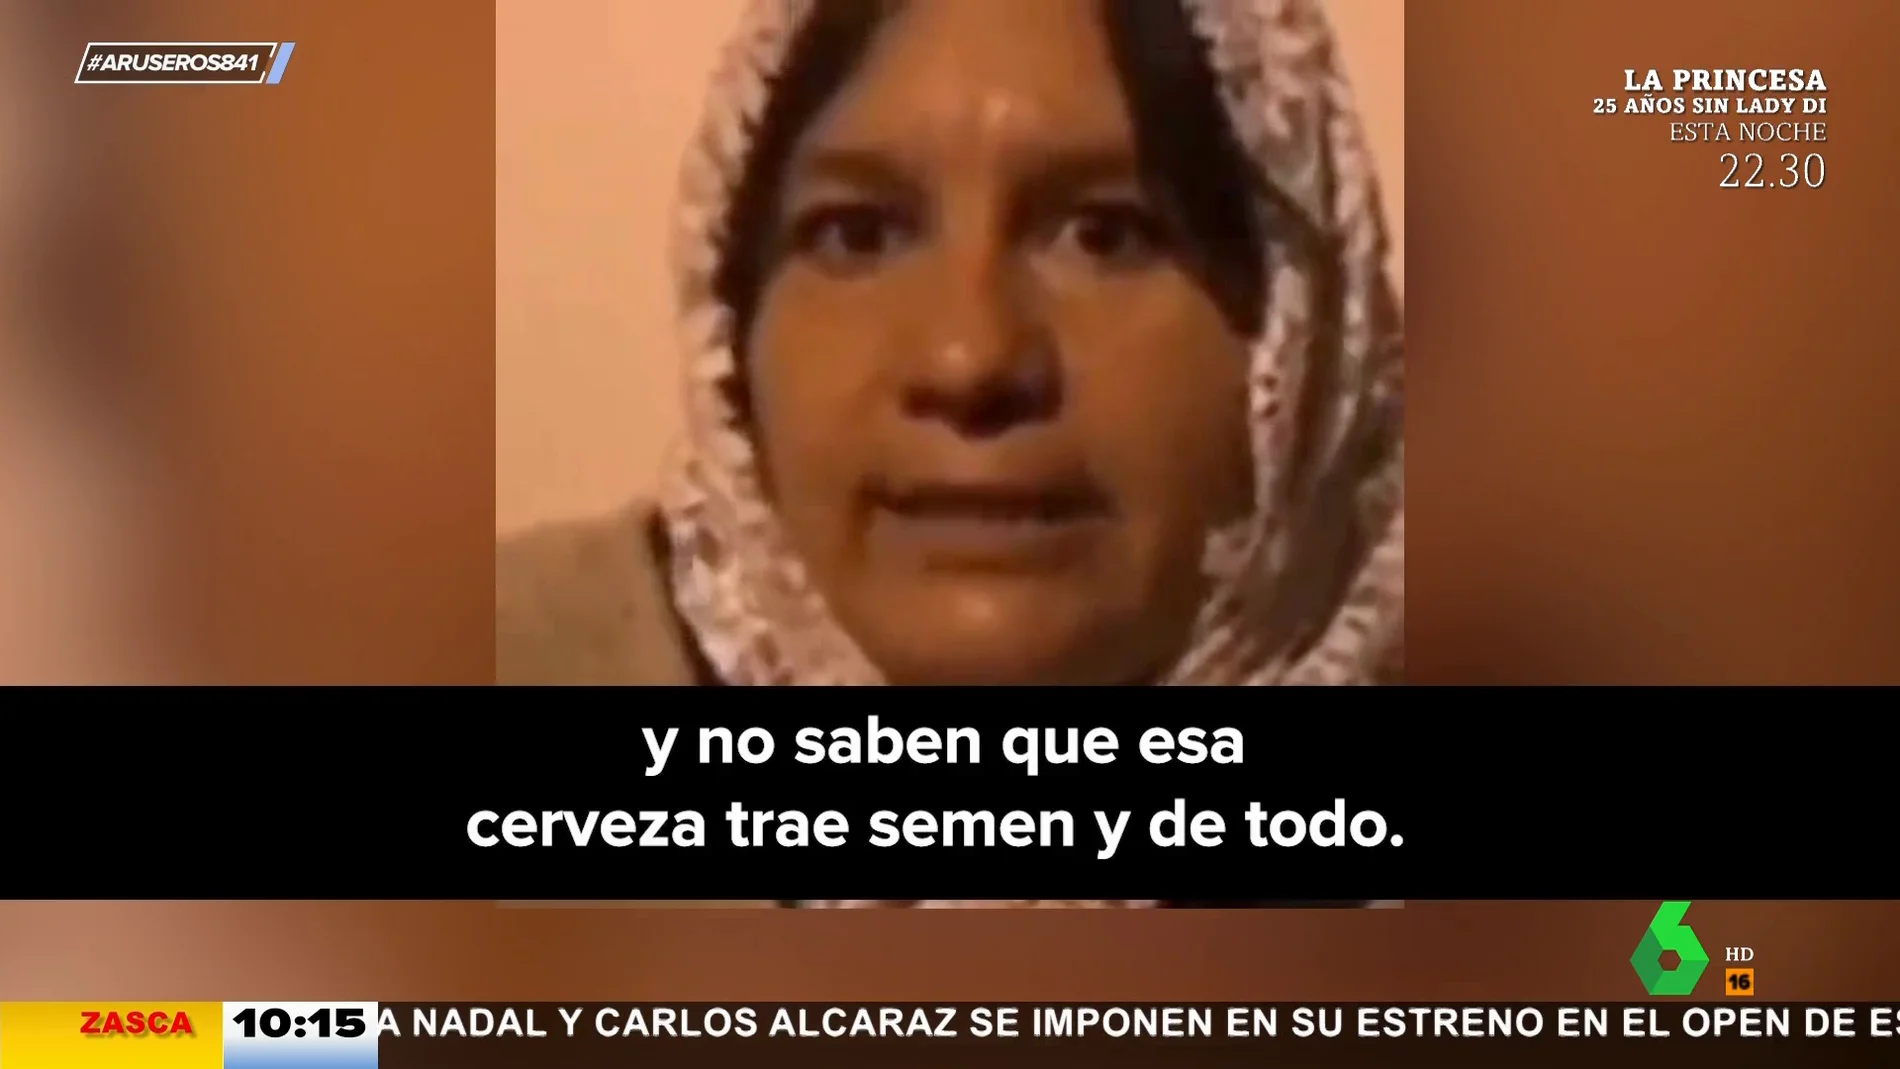 La curiosa advertencia de la señora de Zacatecas: "La cerveza trae semen"